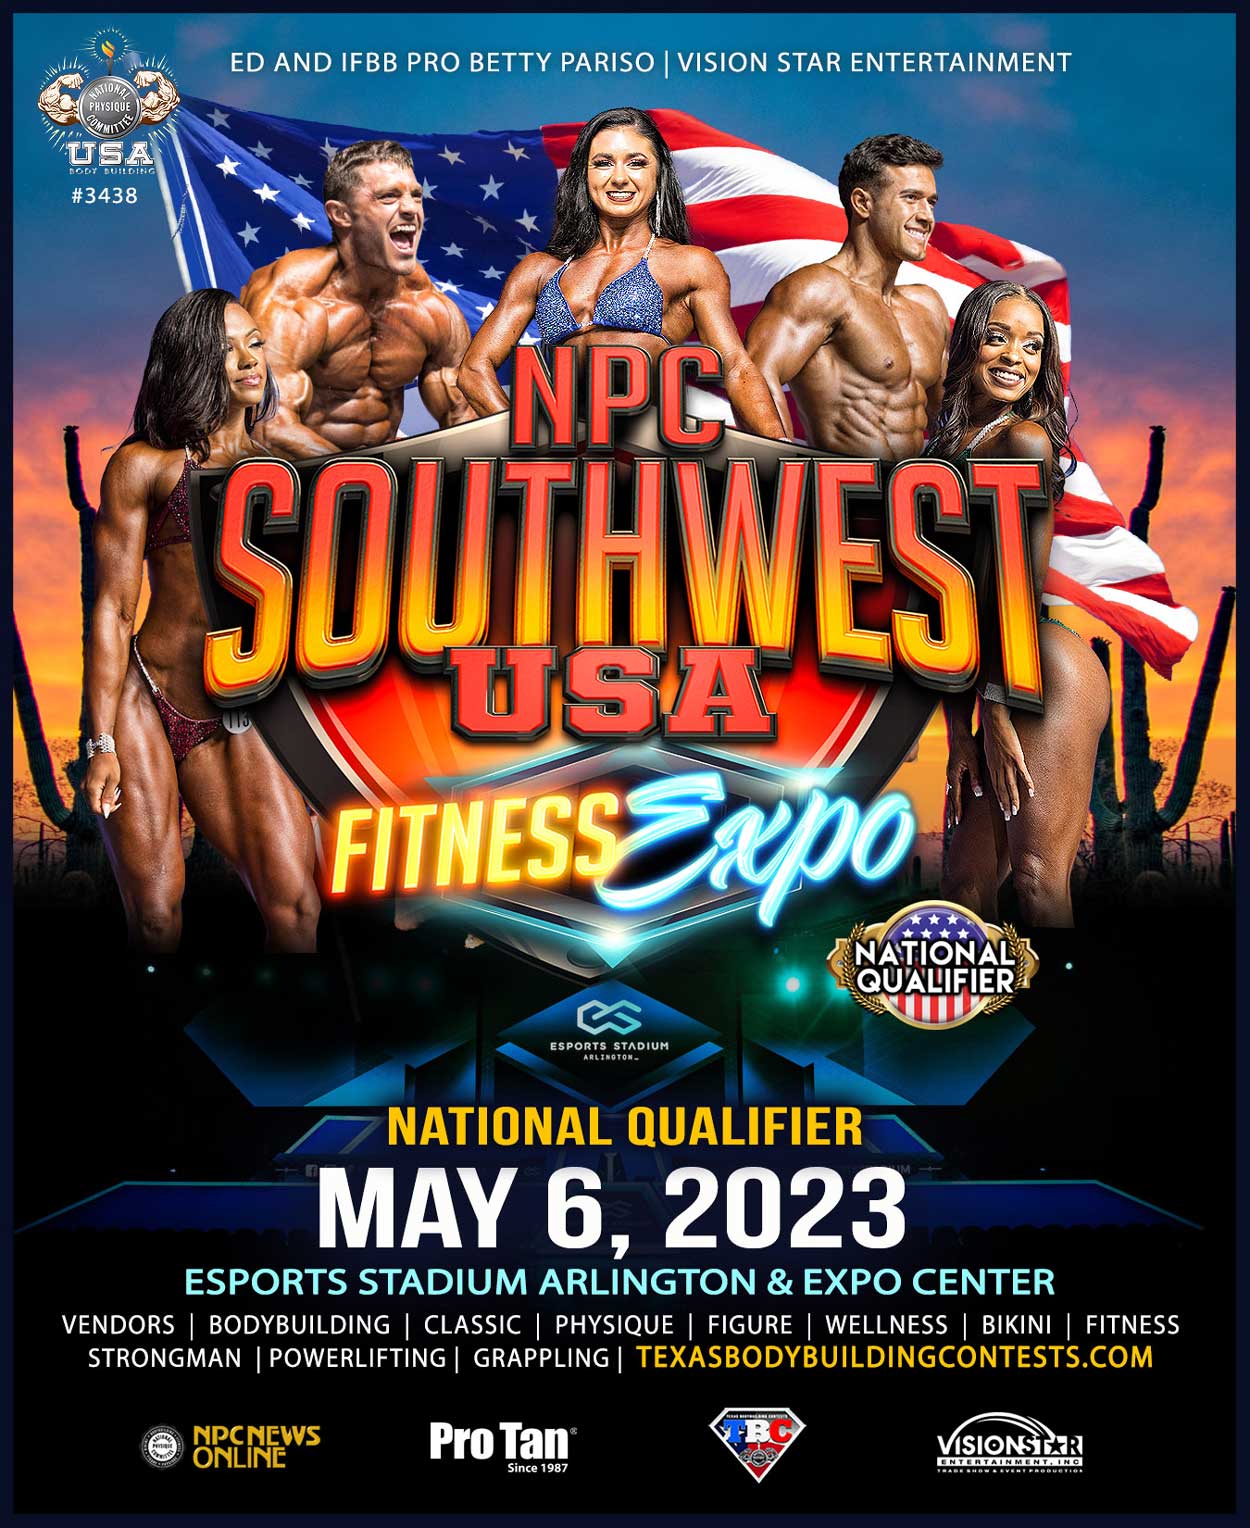 2023 NPC Southwest USA Fitness Expo NPC USA Texas